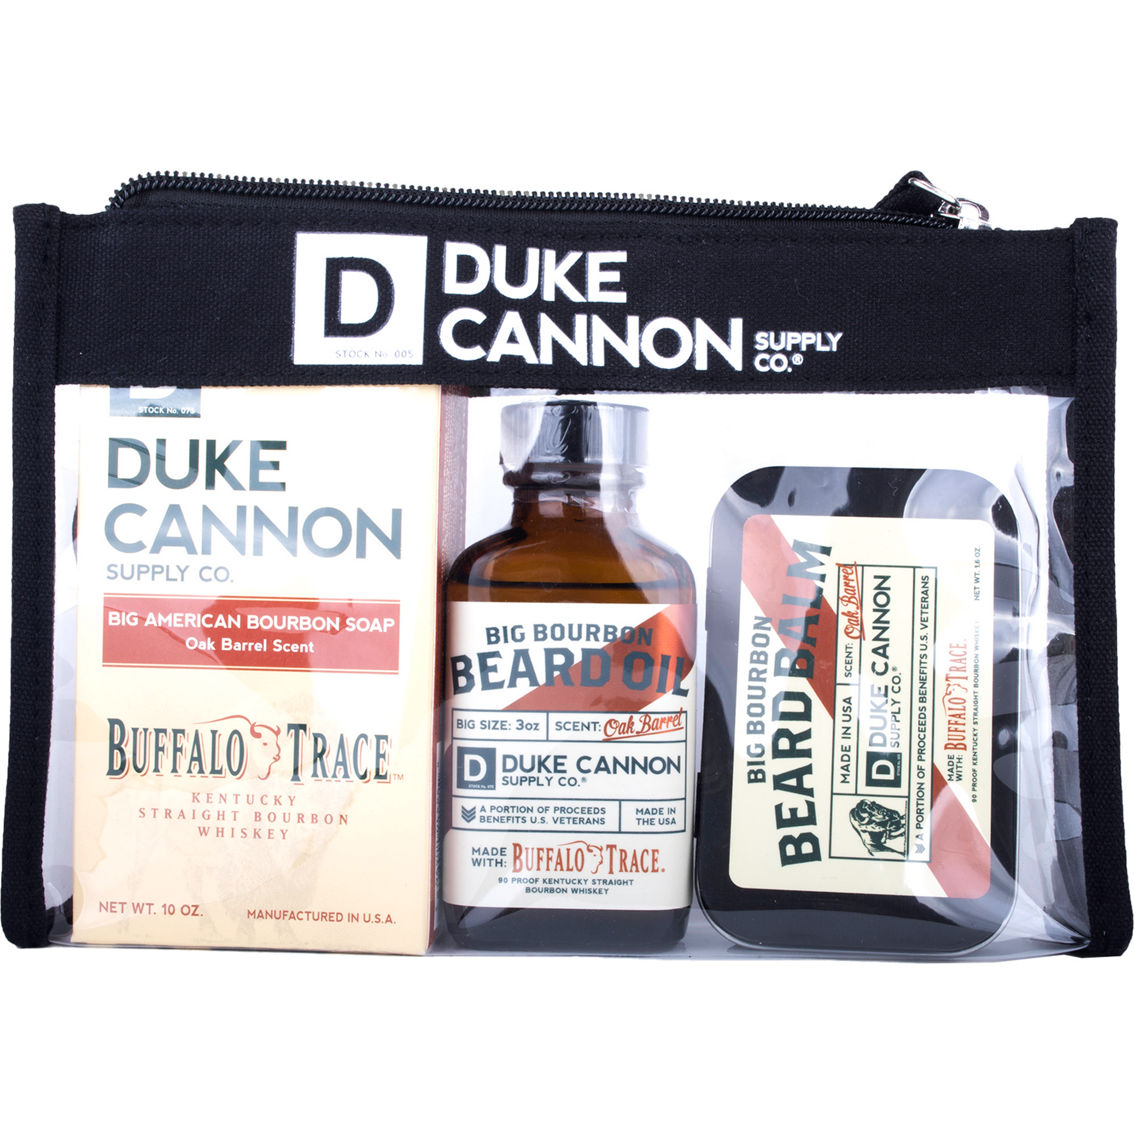 Duke Cannon Big Bourbon Beard Kit - Image 2 of 2